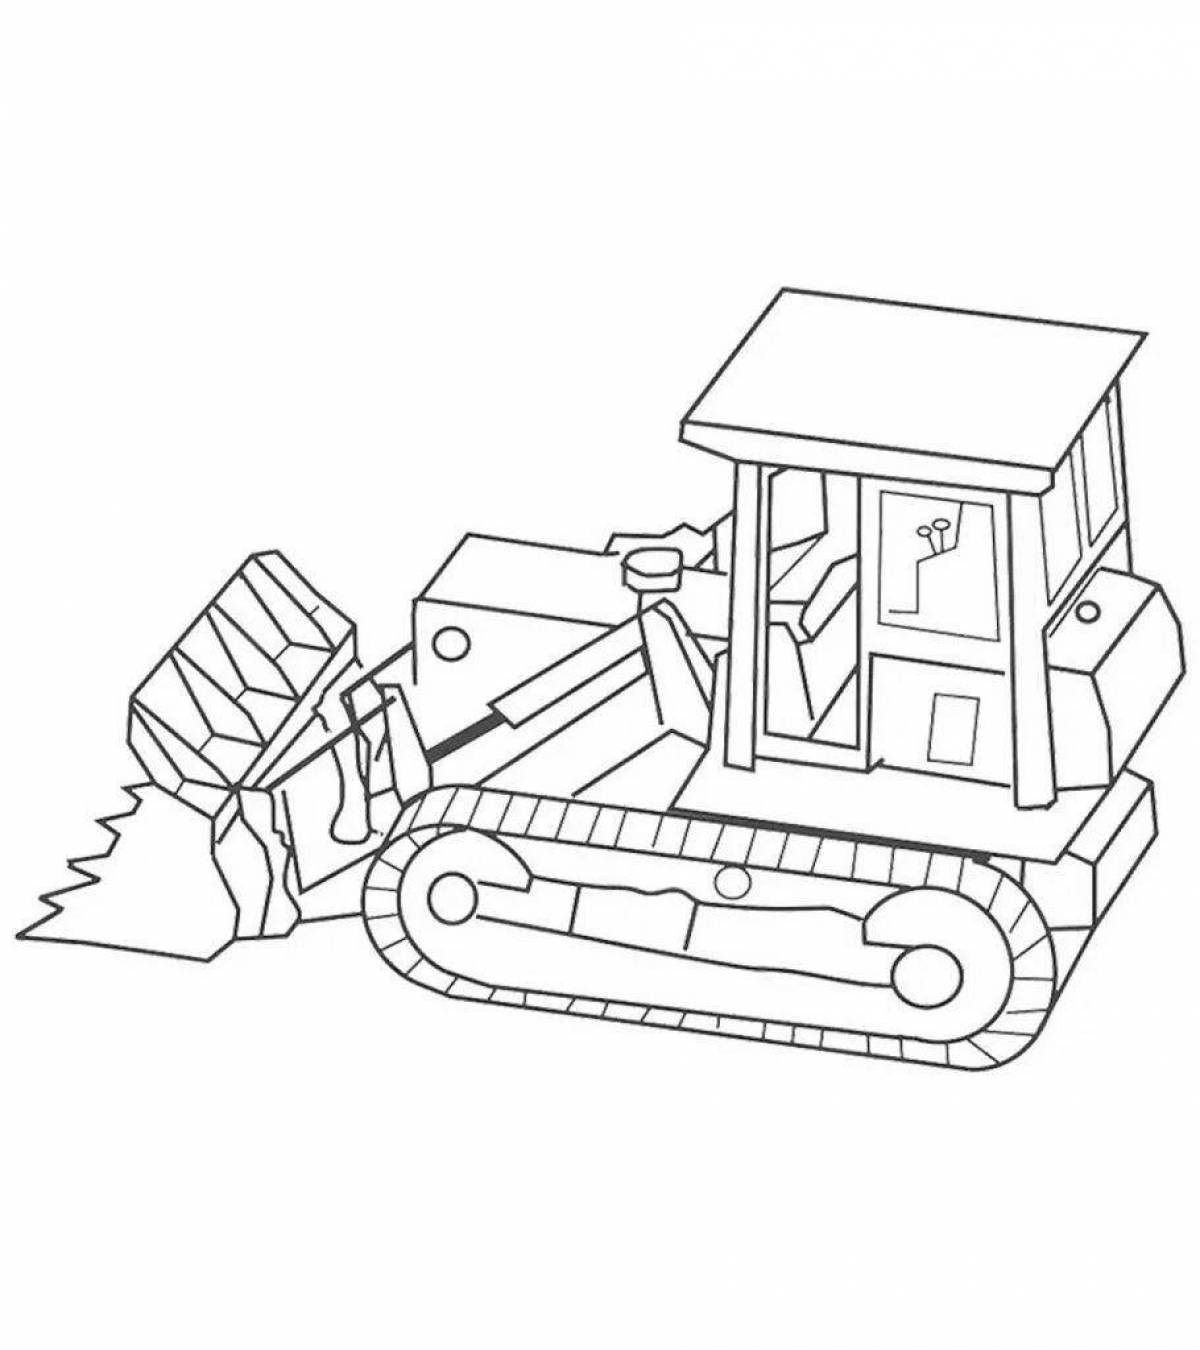 Юмористический тракторный робот-раскраска